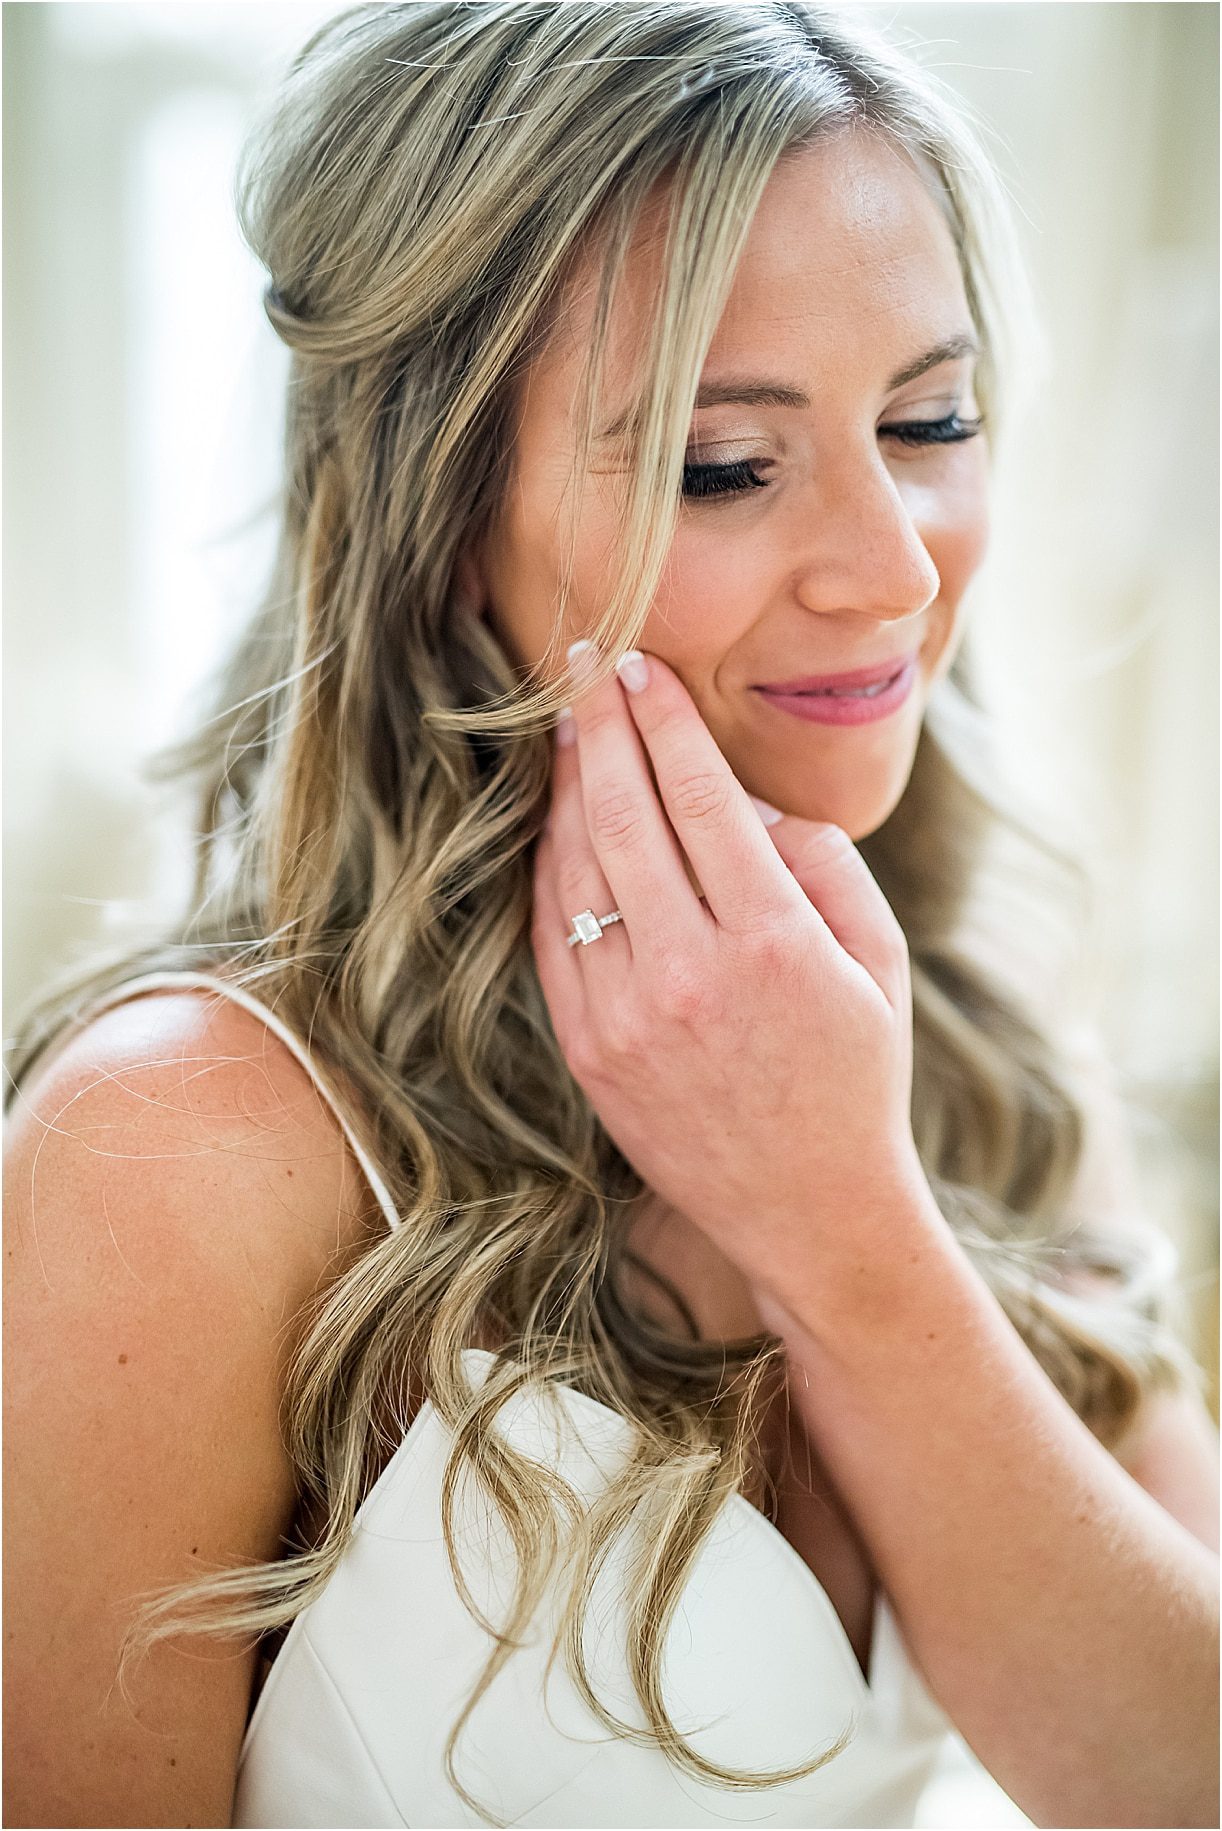 Bride Makeup | Drive In Wedding Ideas | COVID Wedding Ceremony Ideas | Hill City Bride Virginia Weddings